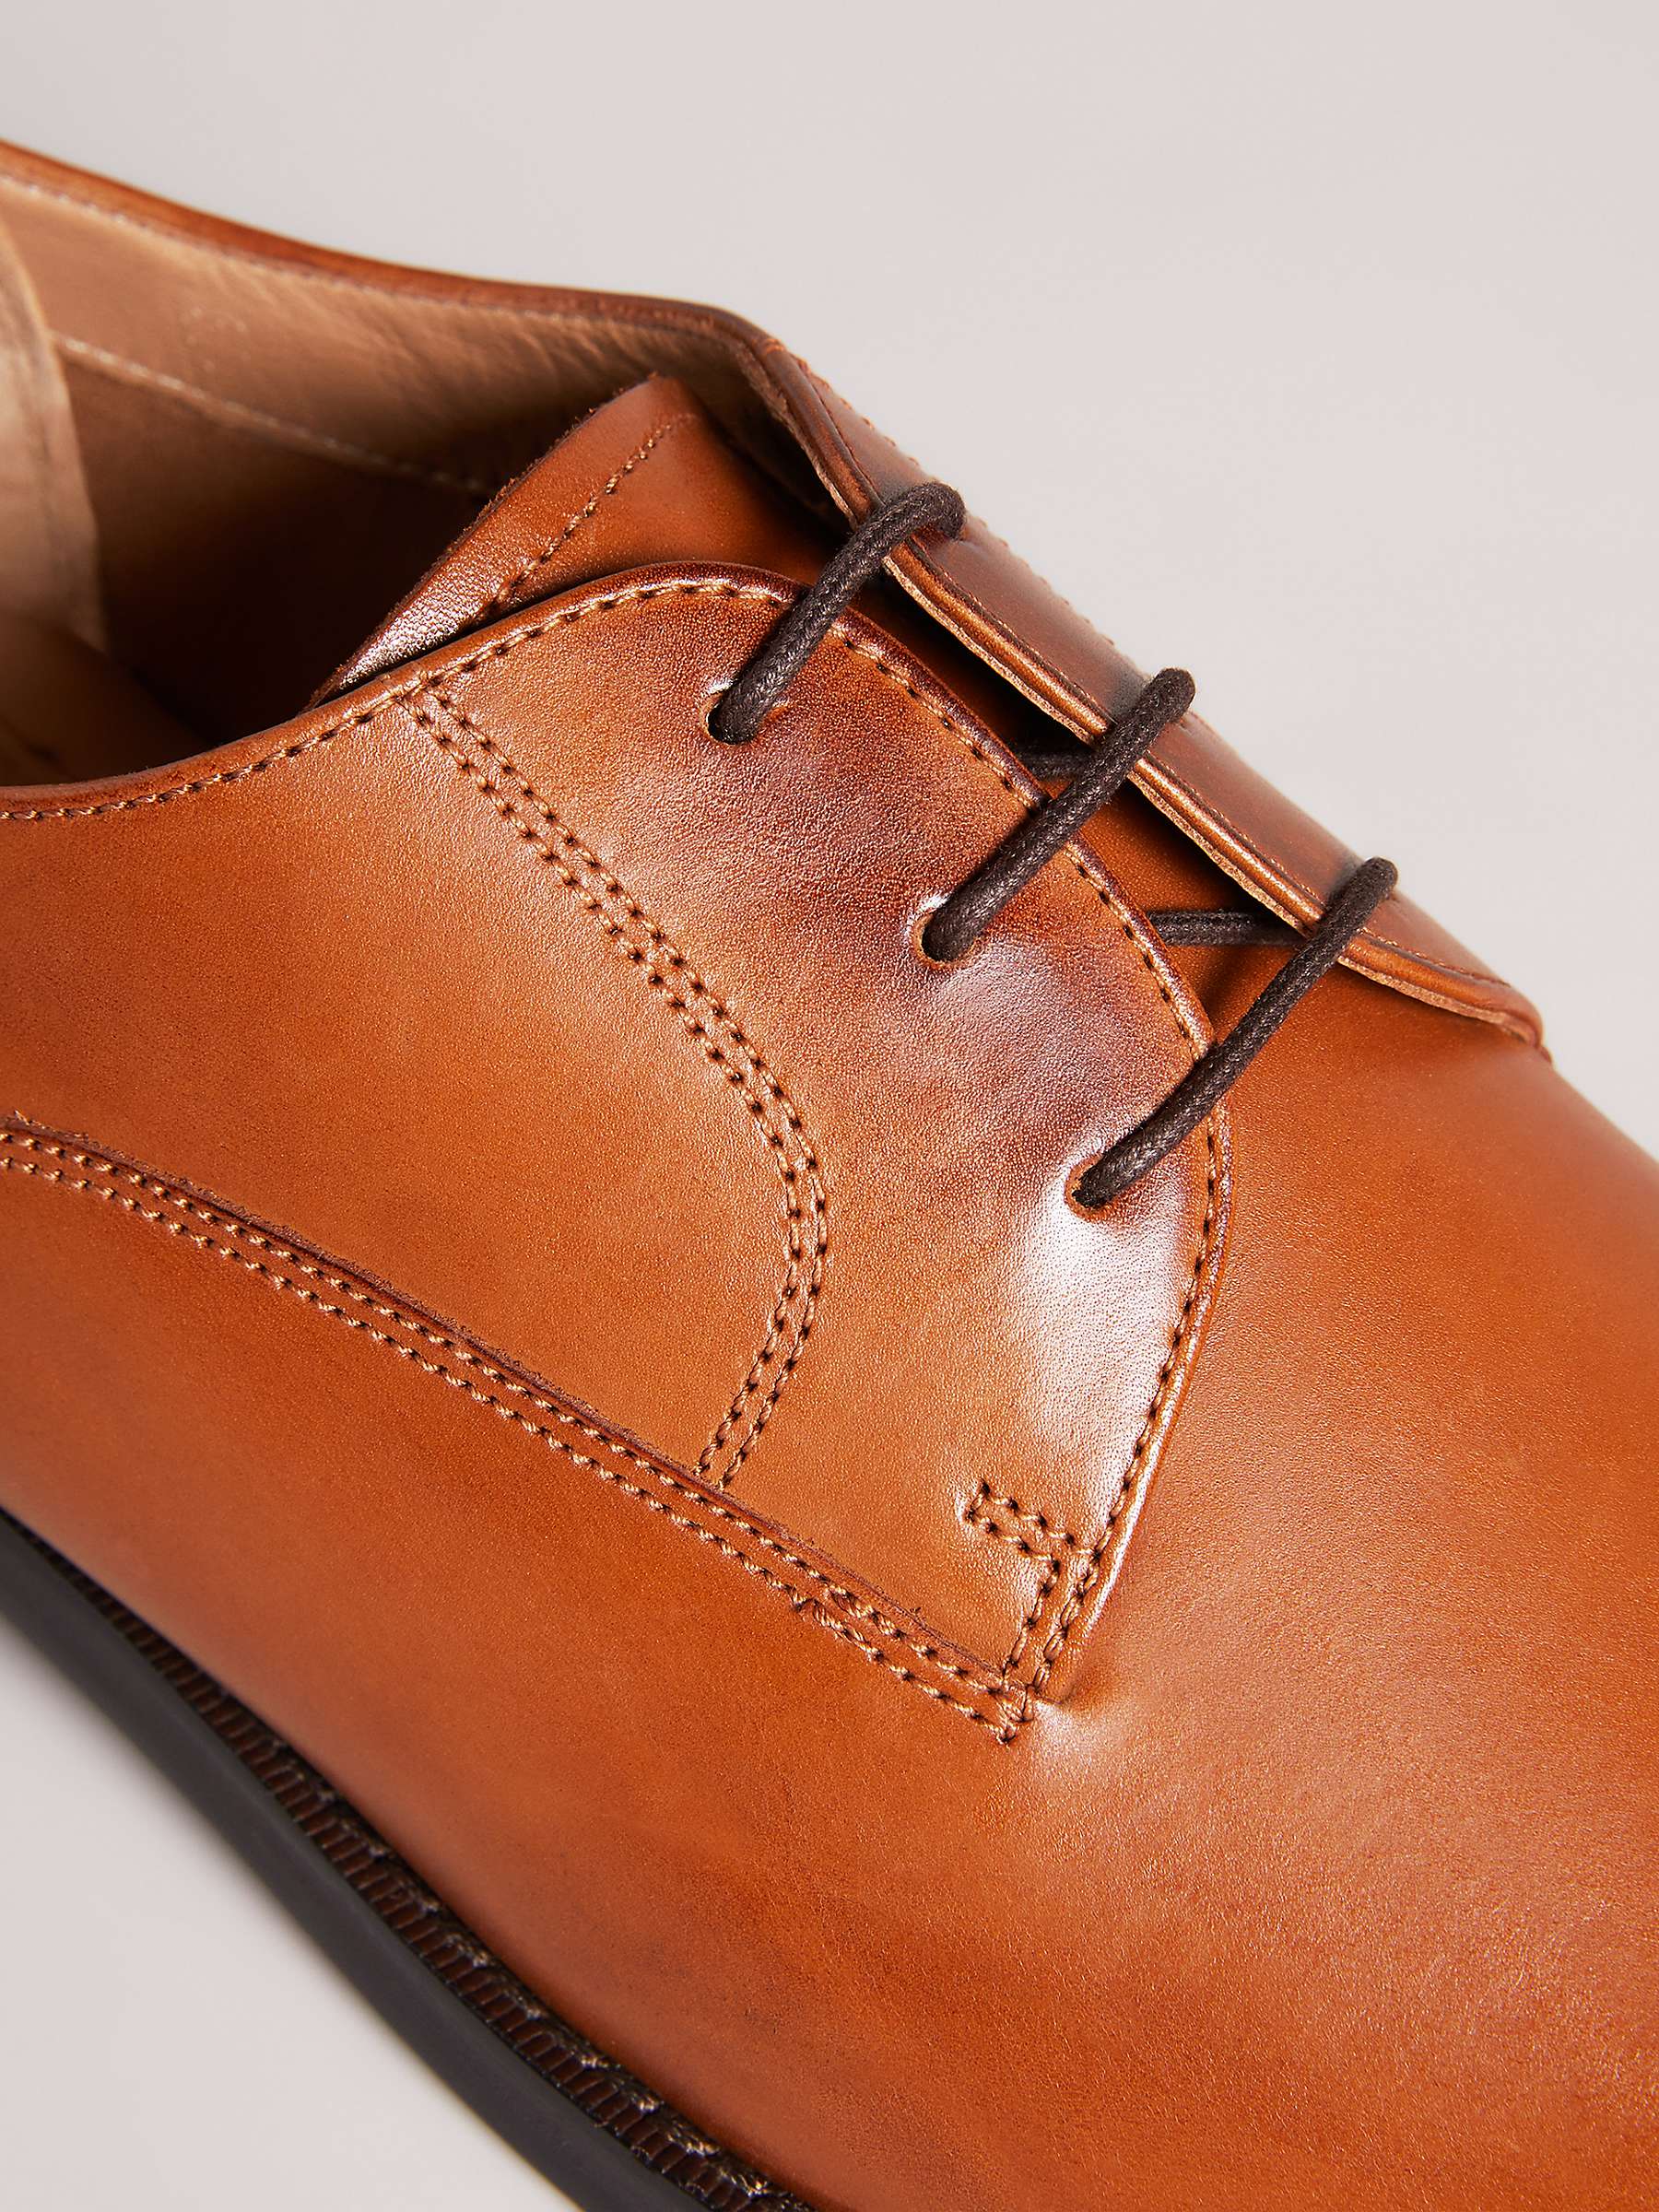 Buy Ted Baker Kampten Leather Derby Shoes, Tan Online at johnlewis.com